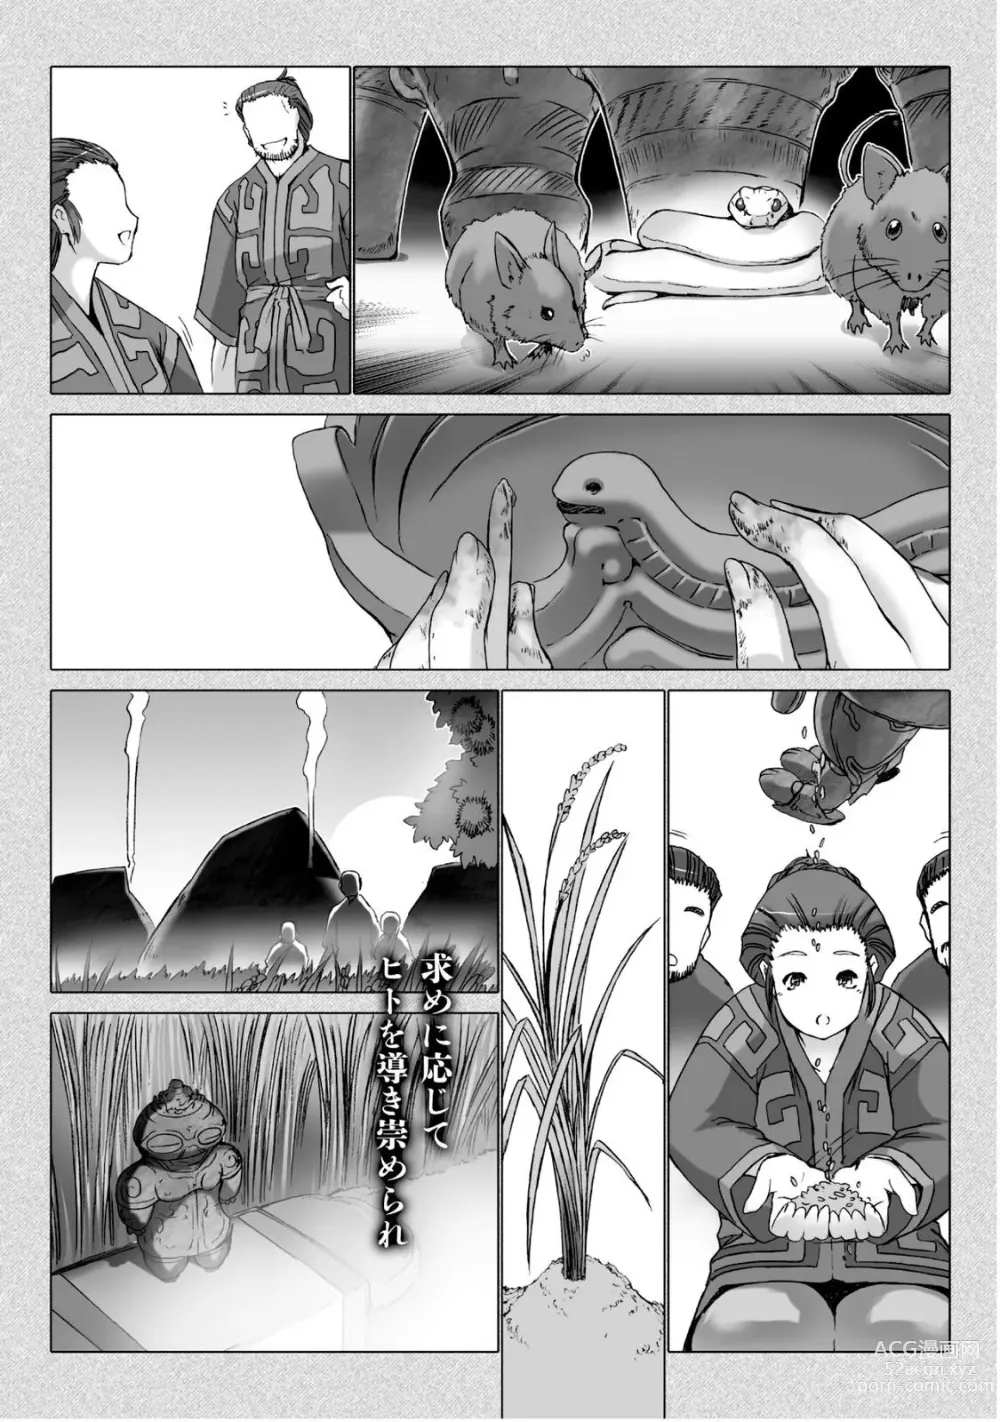 Page 184 of manga Ziggurat 5